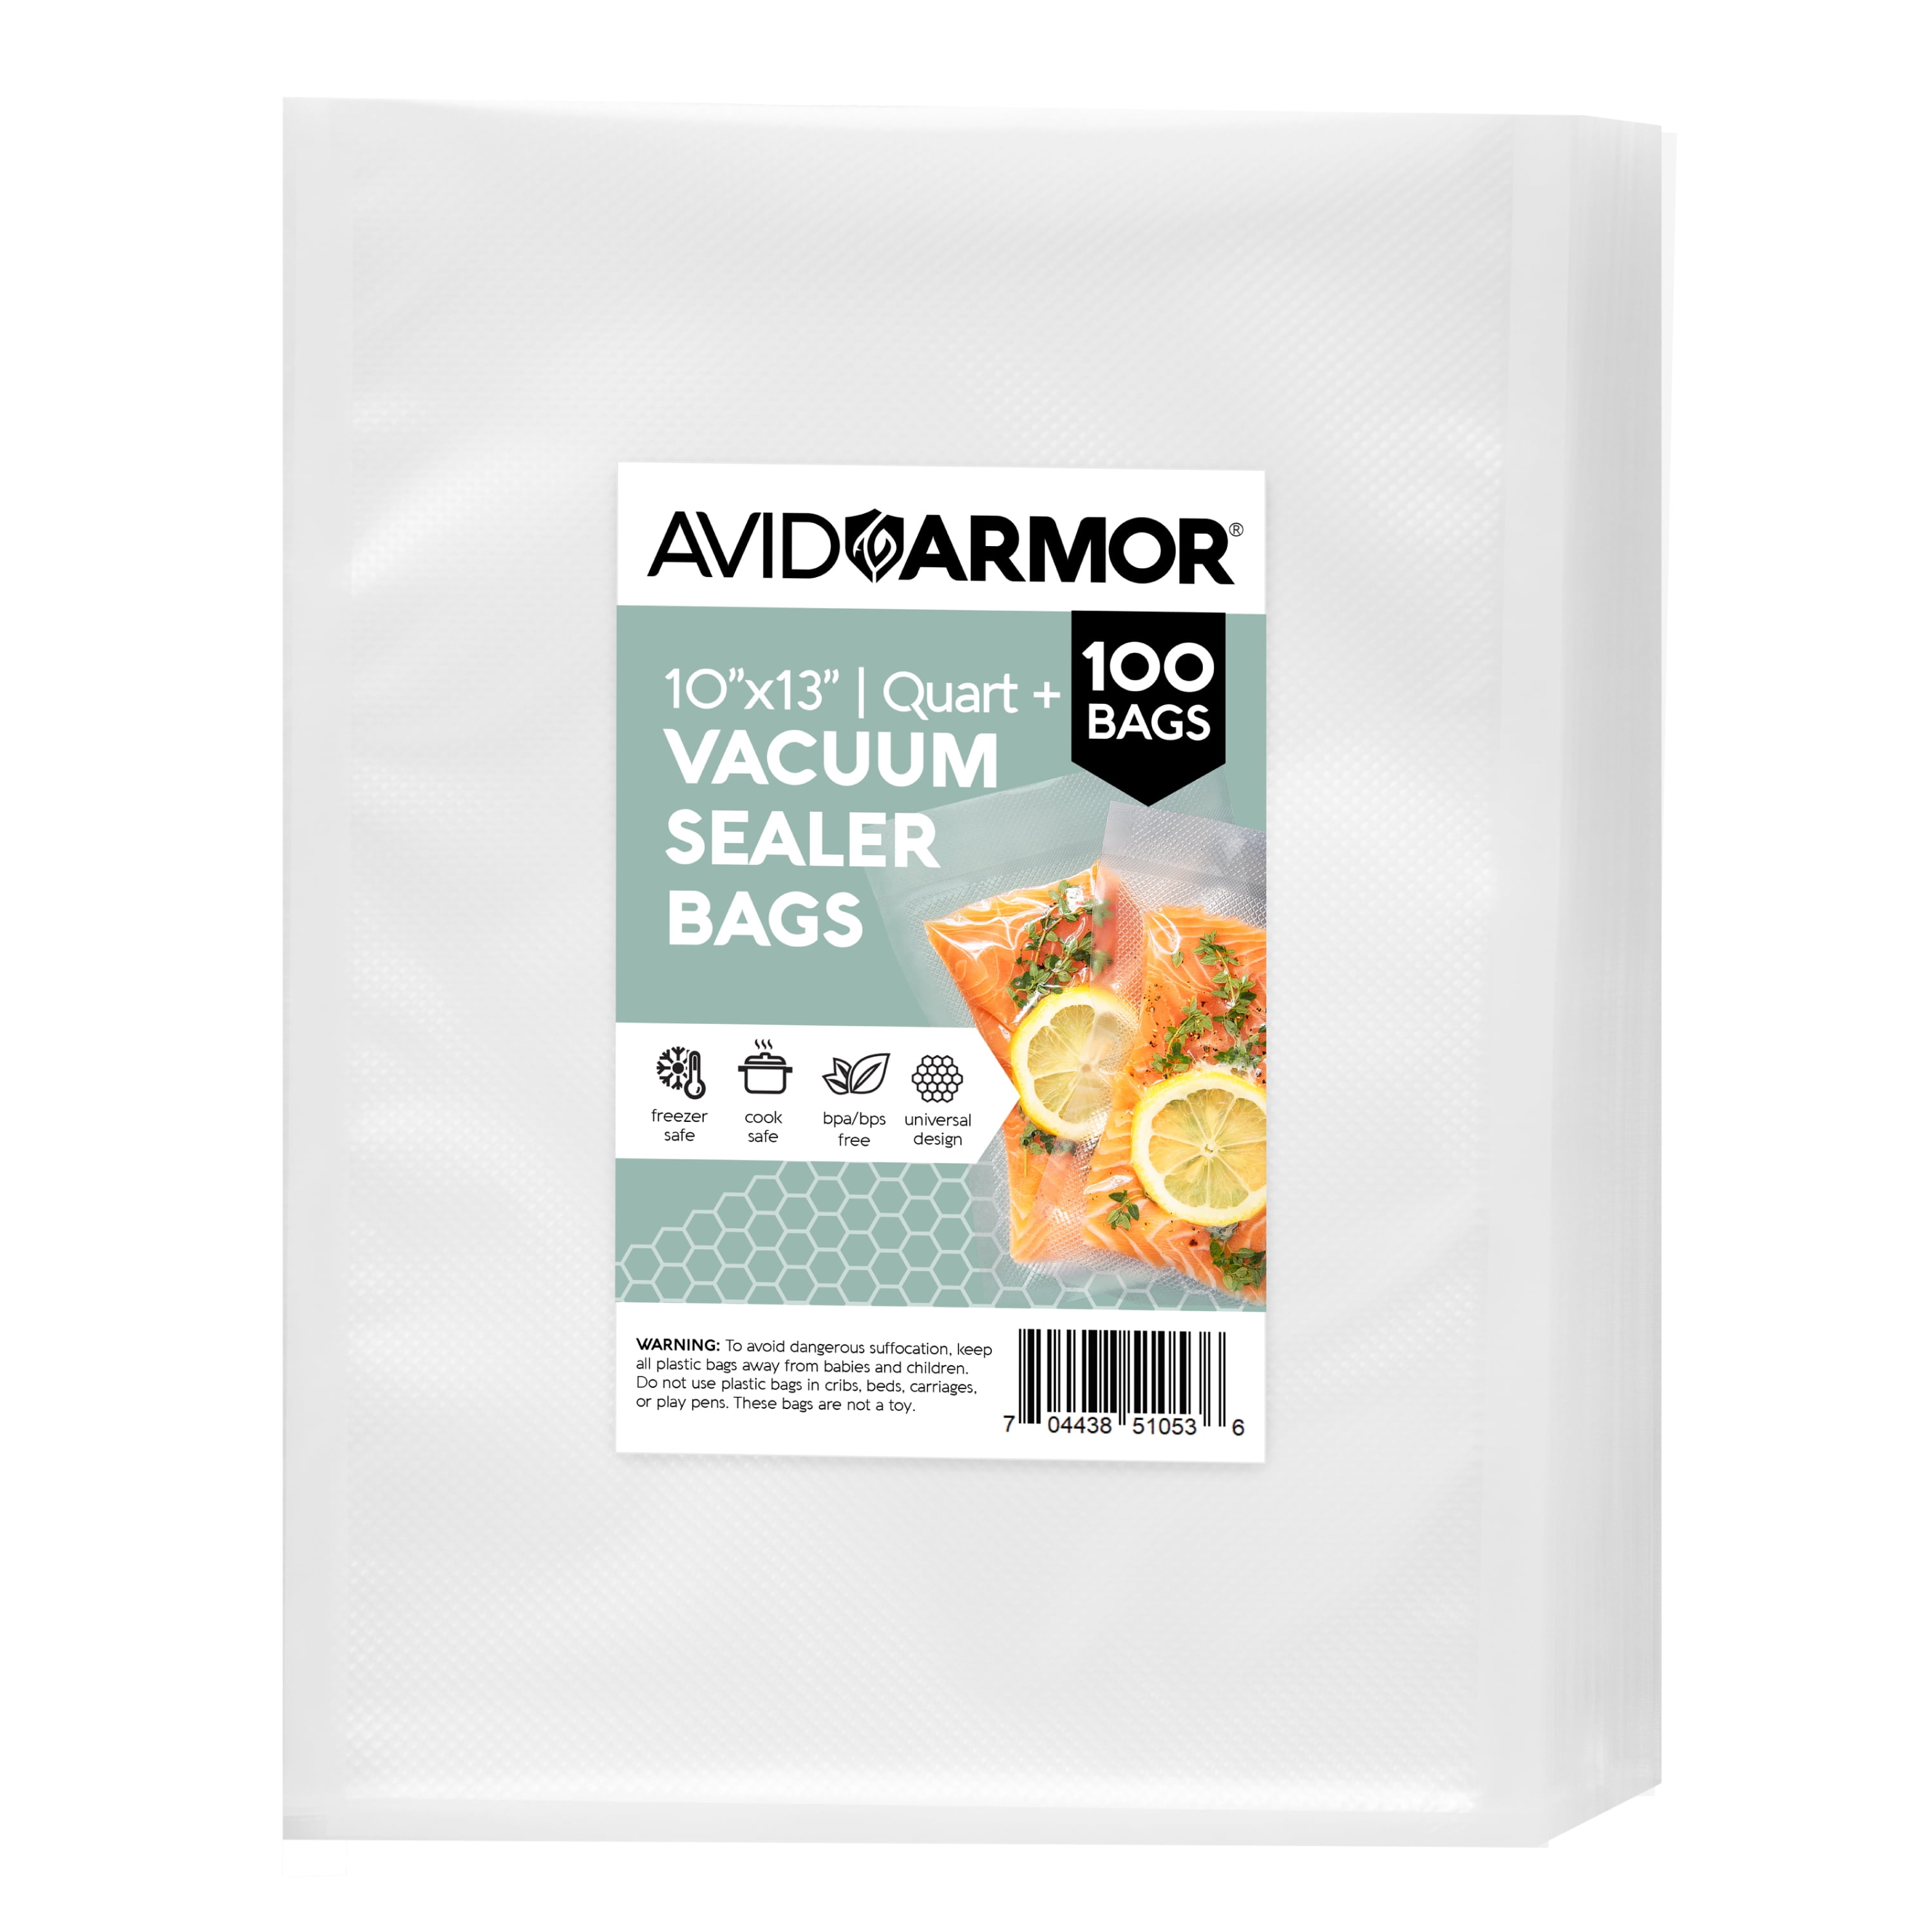 Avid Armor 10x13 Vacuum Seal Bags, Clear, 100 Quart Plus Vacuum Sealer  Food Saver Bags